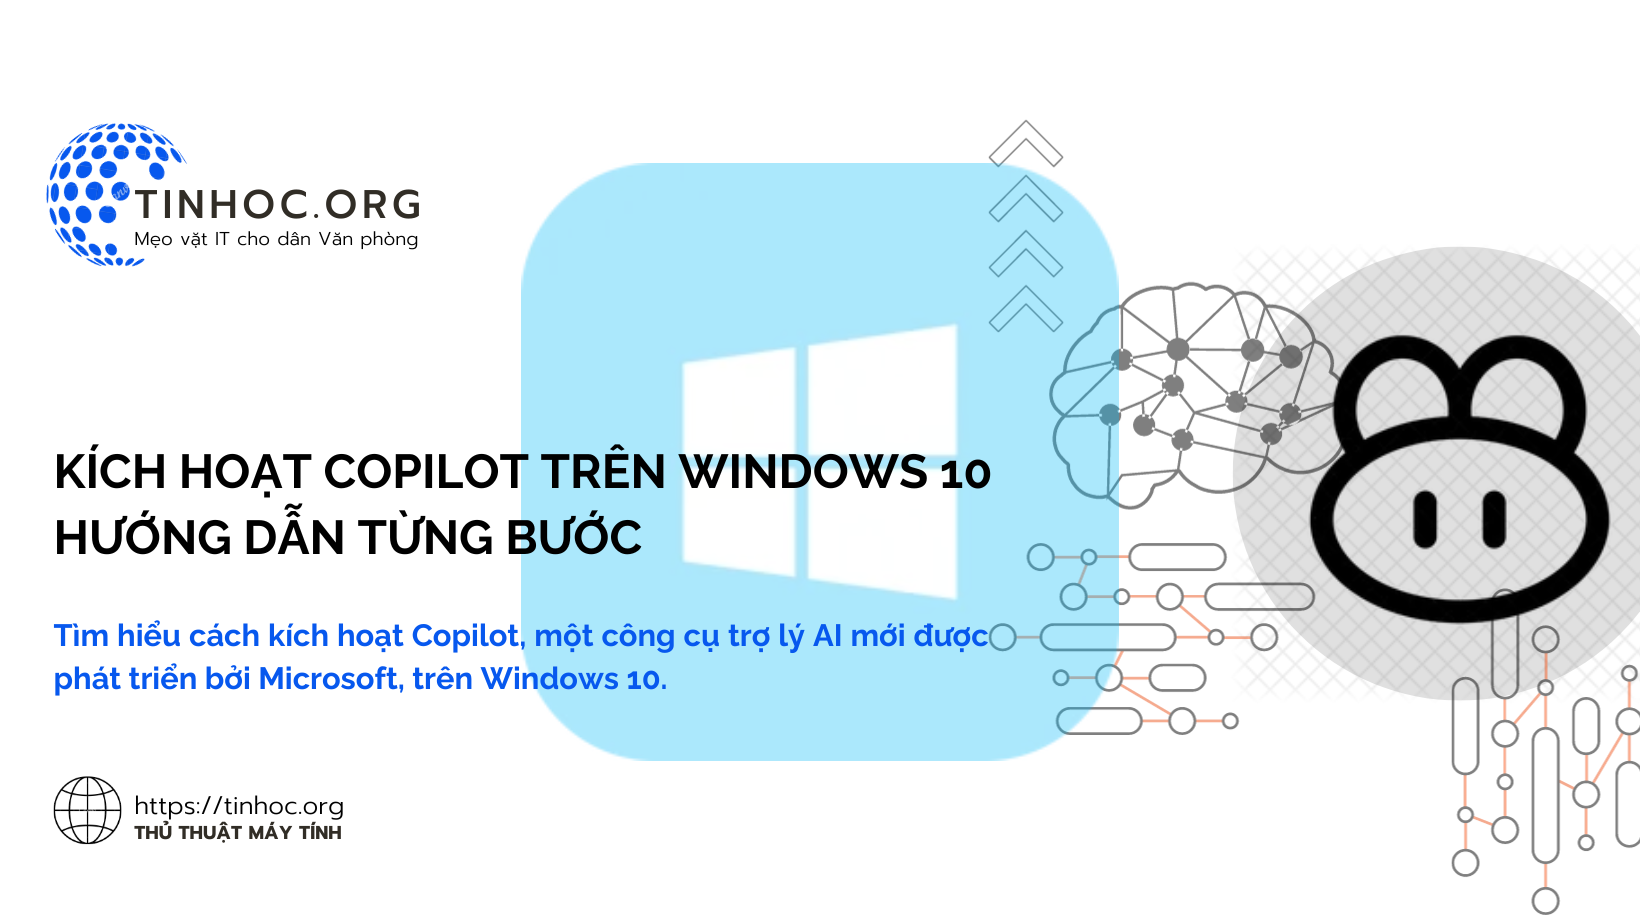 Tìm hiểu cách kích hoạt Copilot, một công cụ trợ lý AI mới được phát triển bởi Microsoft, trên Windows 10.